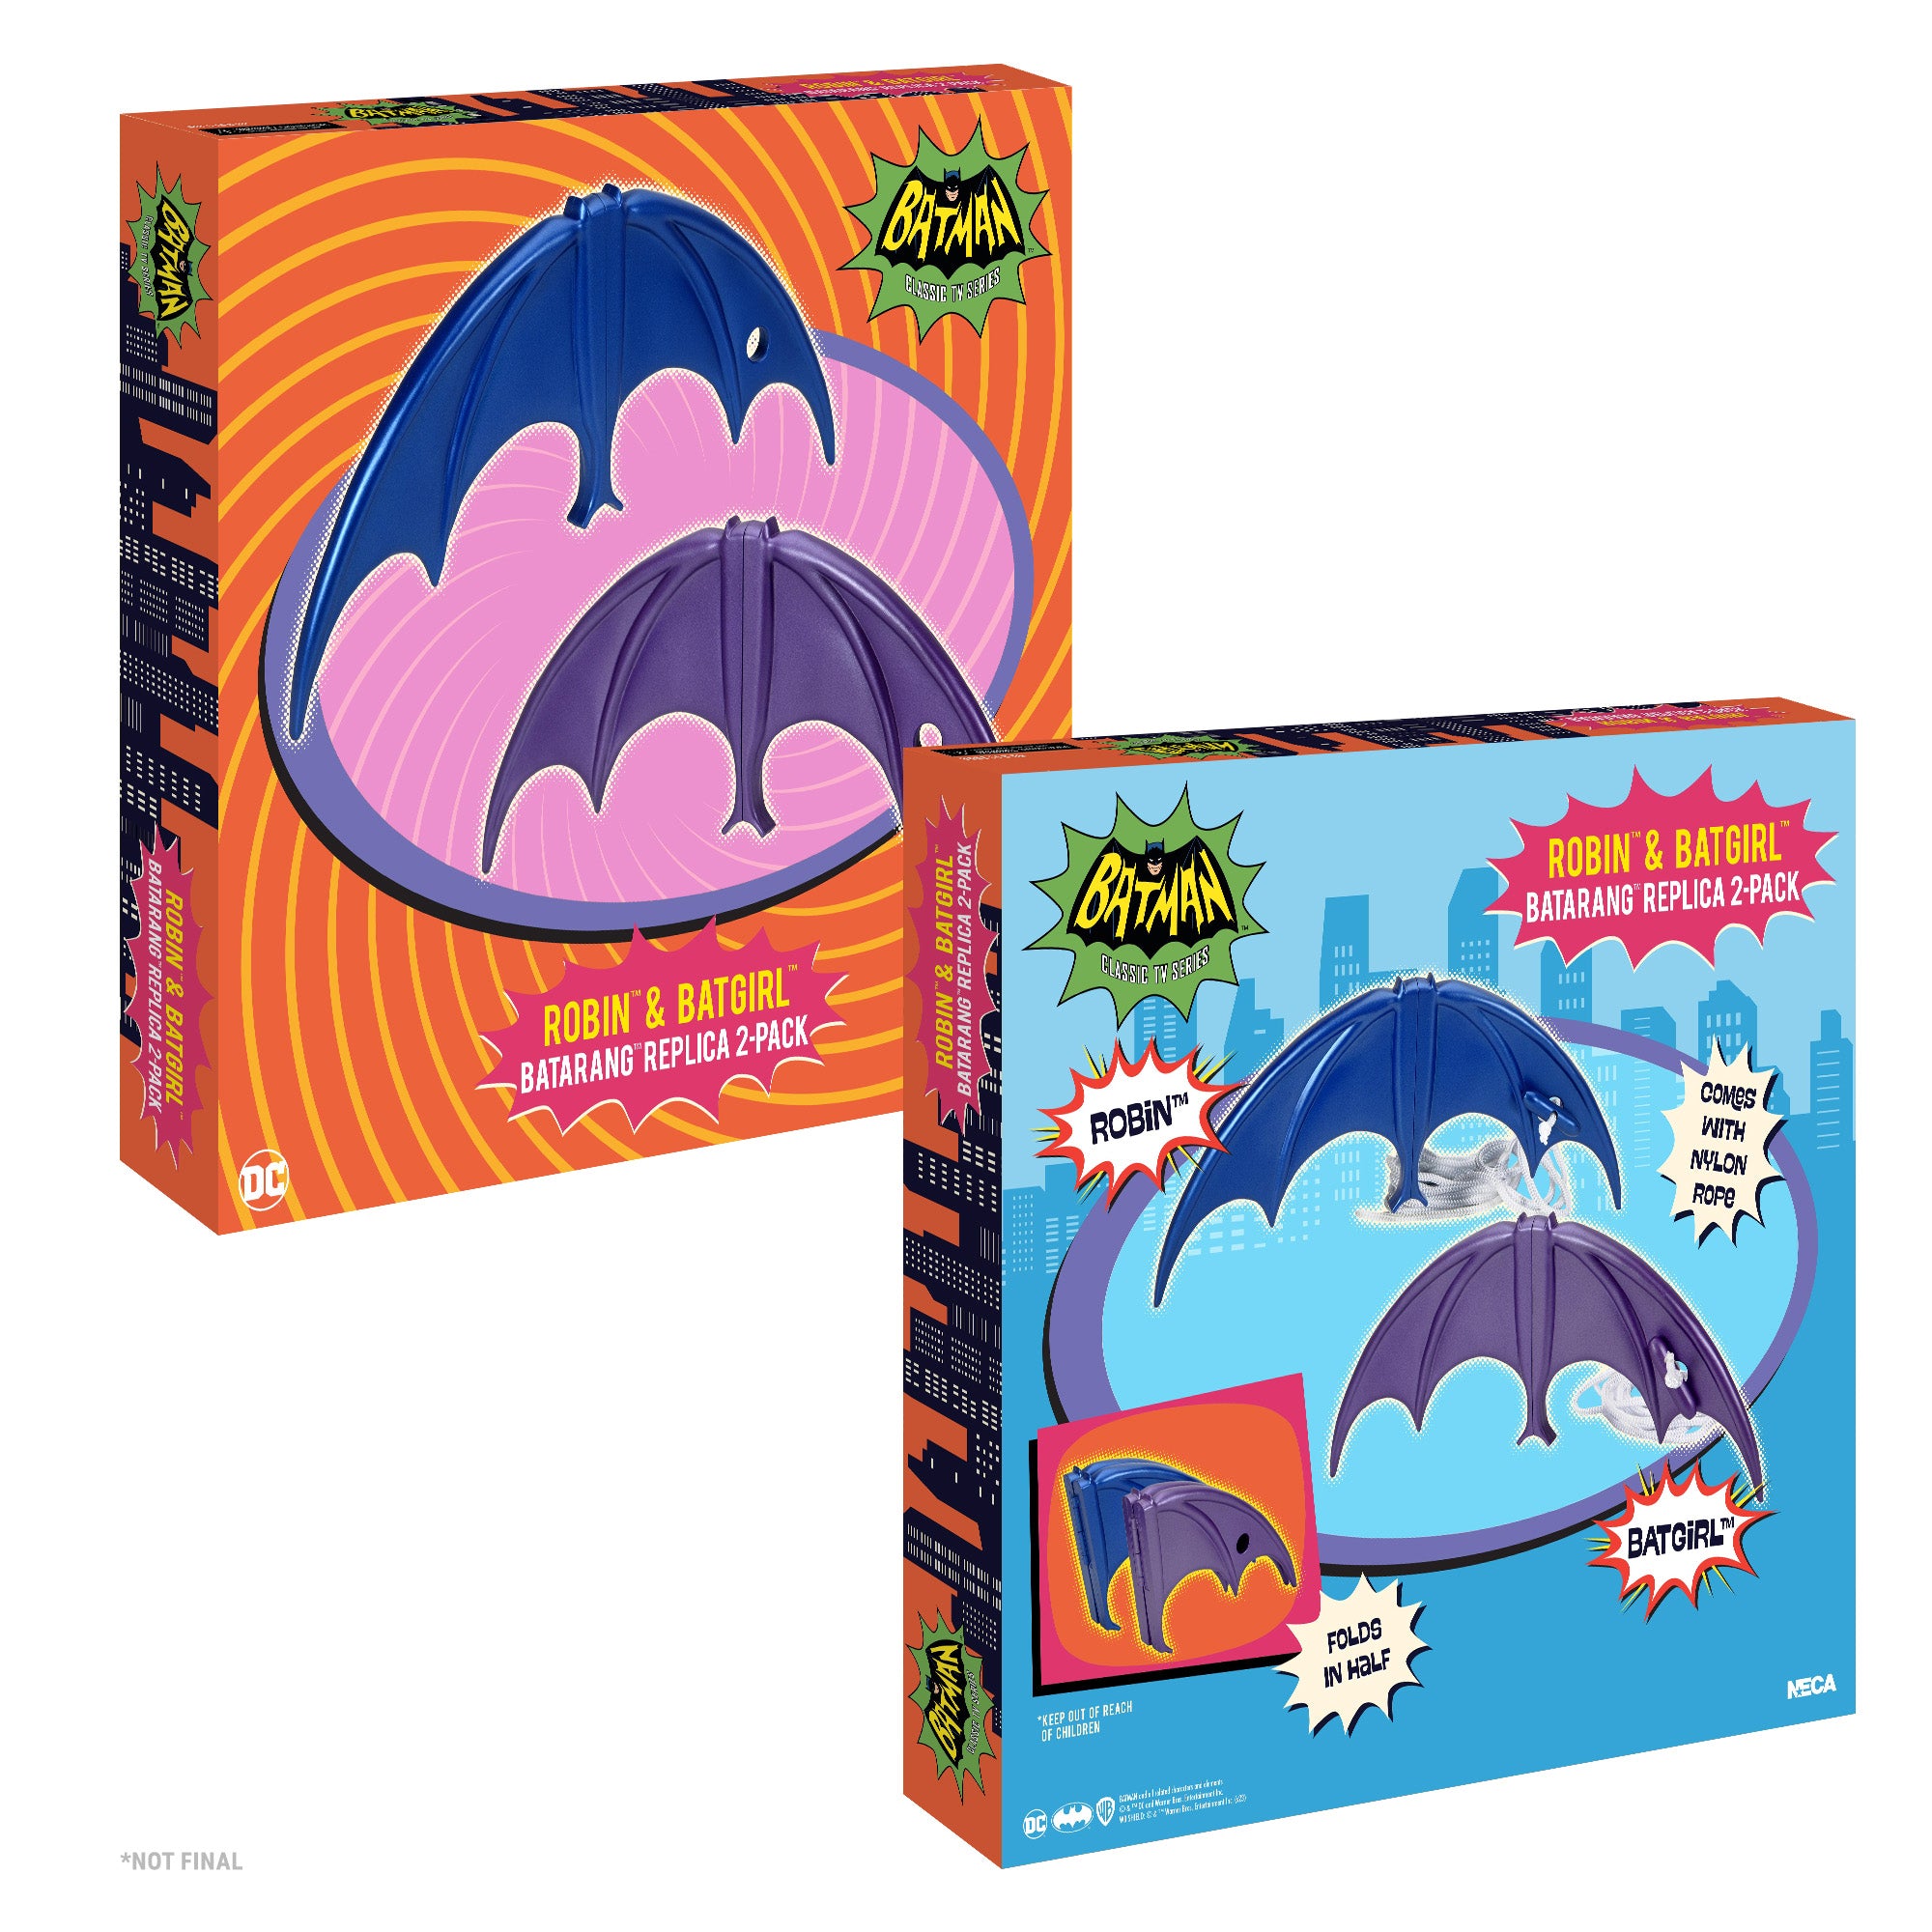 Batman 1966 TV Show Batgirl and Robin Batarangs packaging